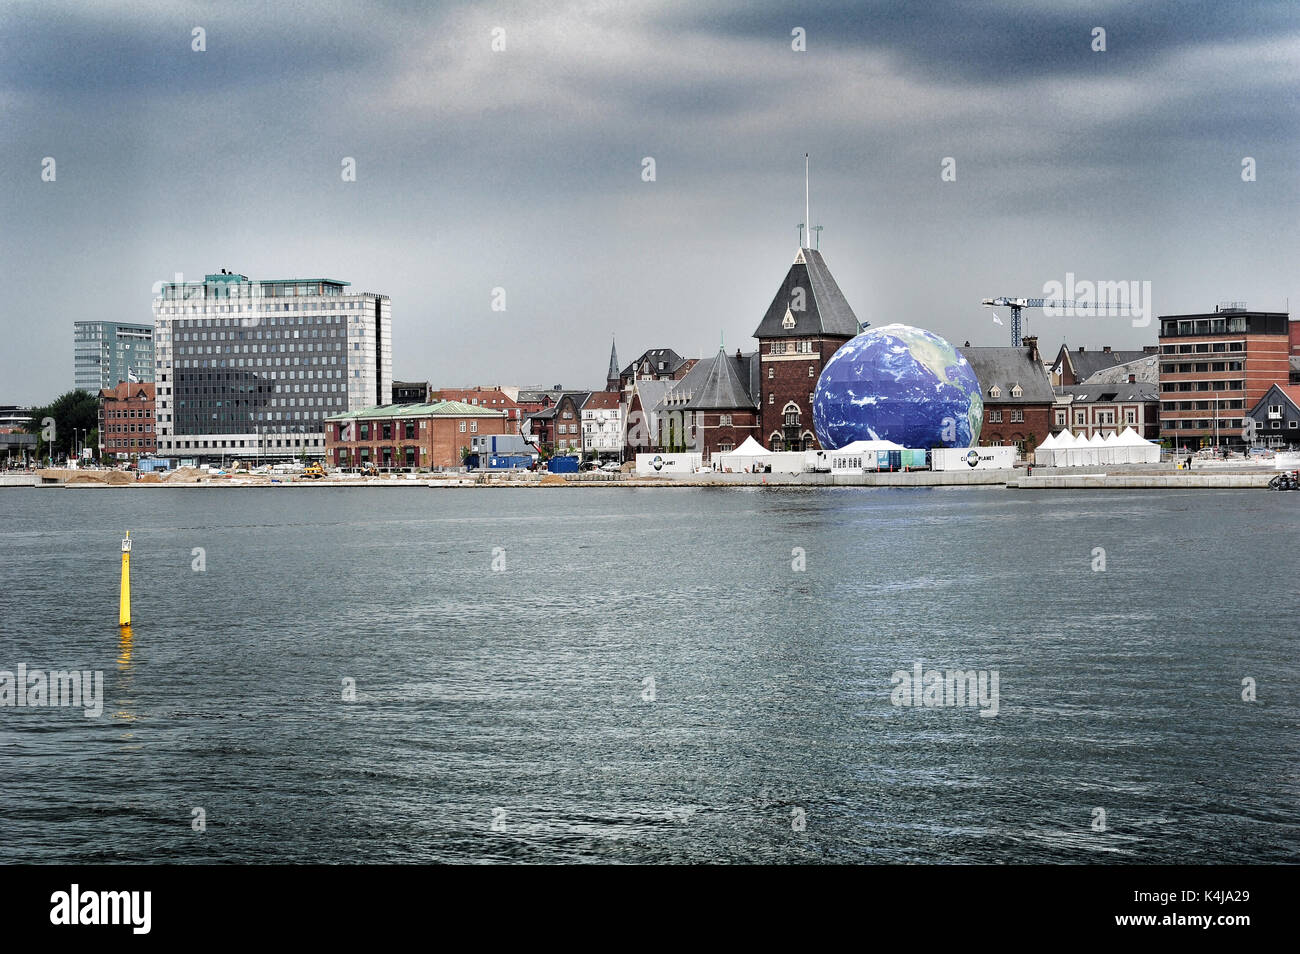 La città di Aarhus con il nuovo mondo del clima pianeta, visto dalla zona portuale. Foto Stock